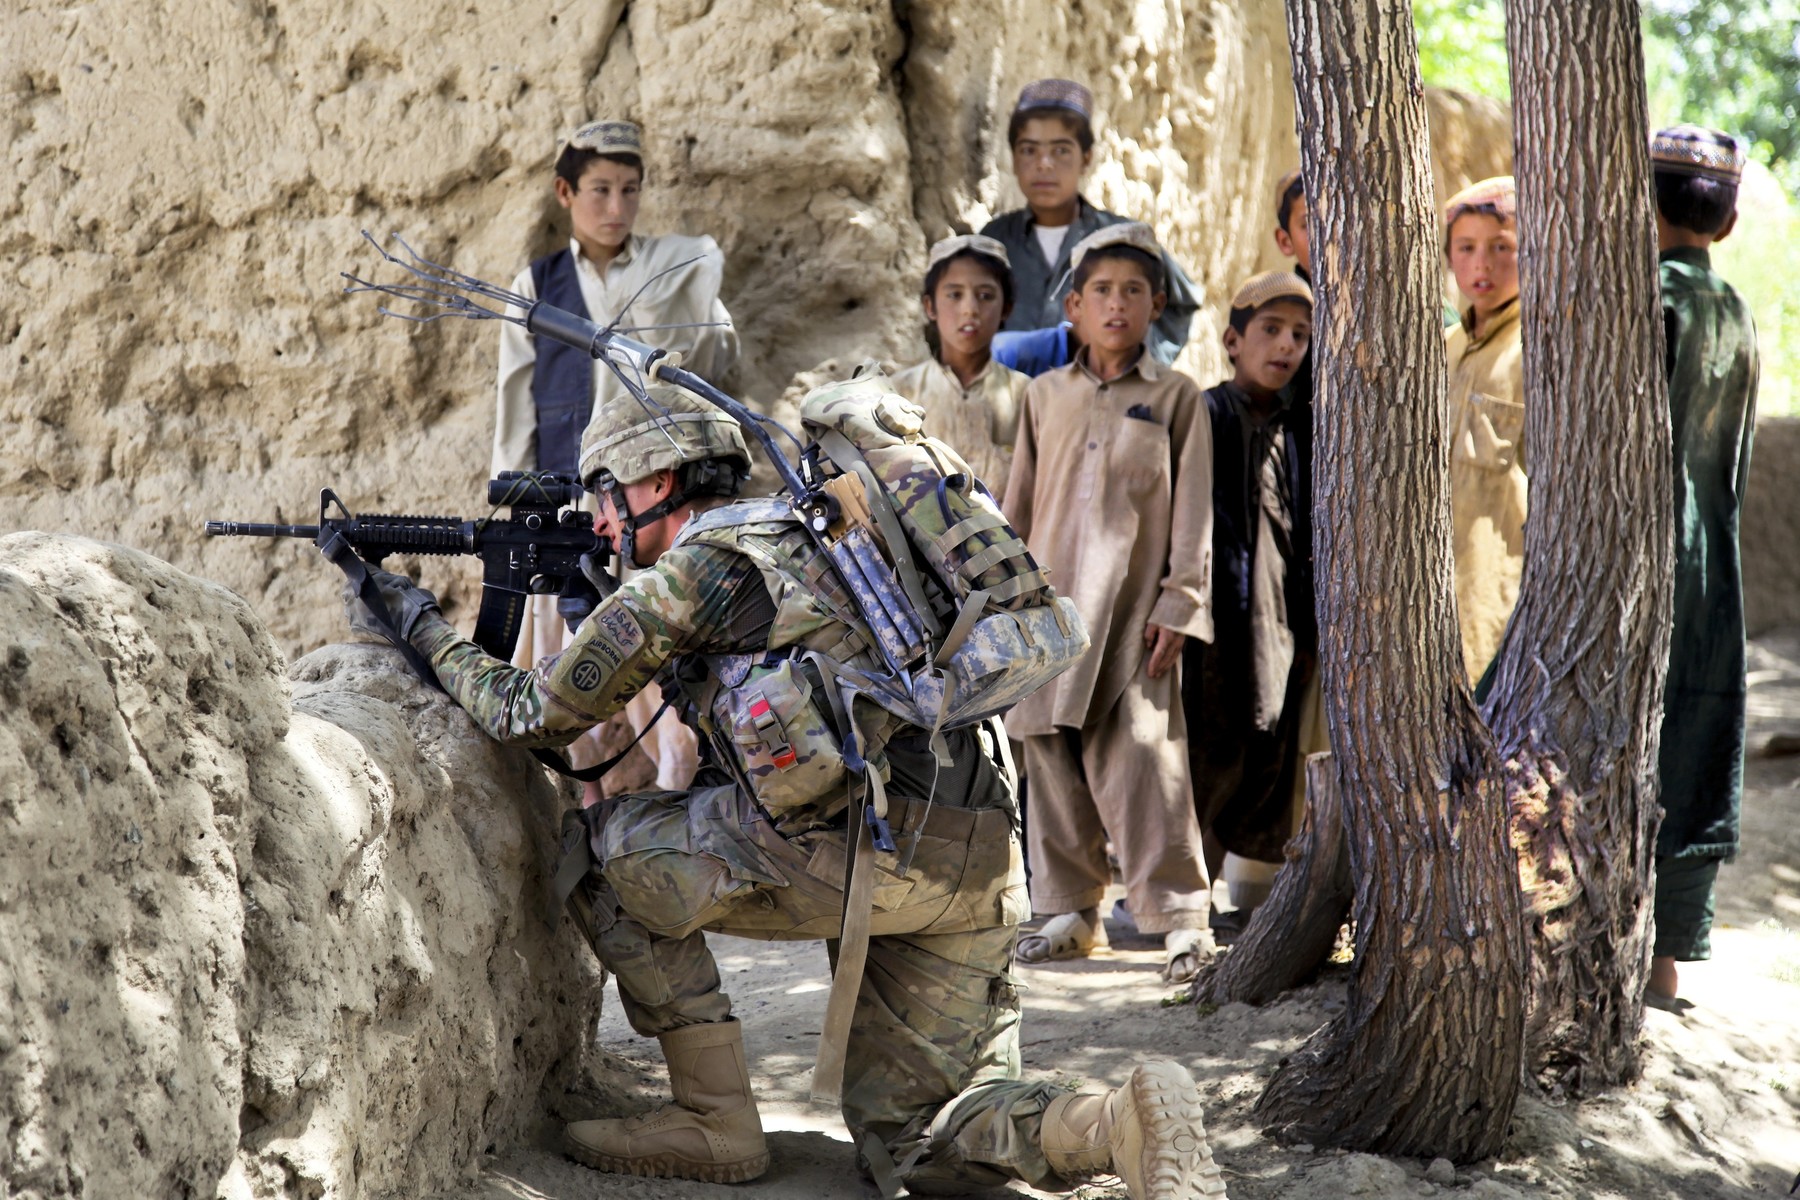 tans-afghanistan-children1-432-1486375918.jpg